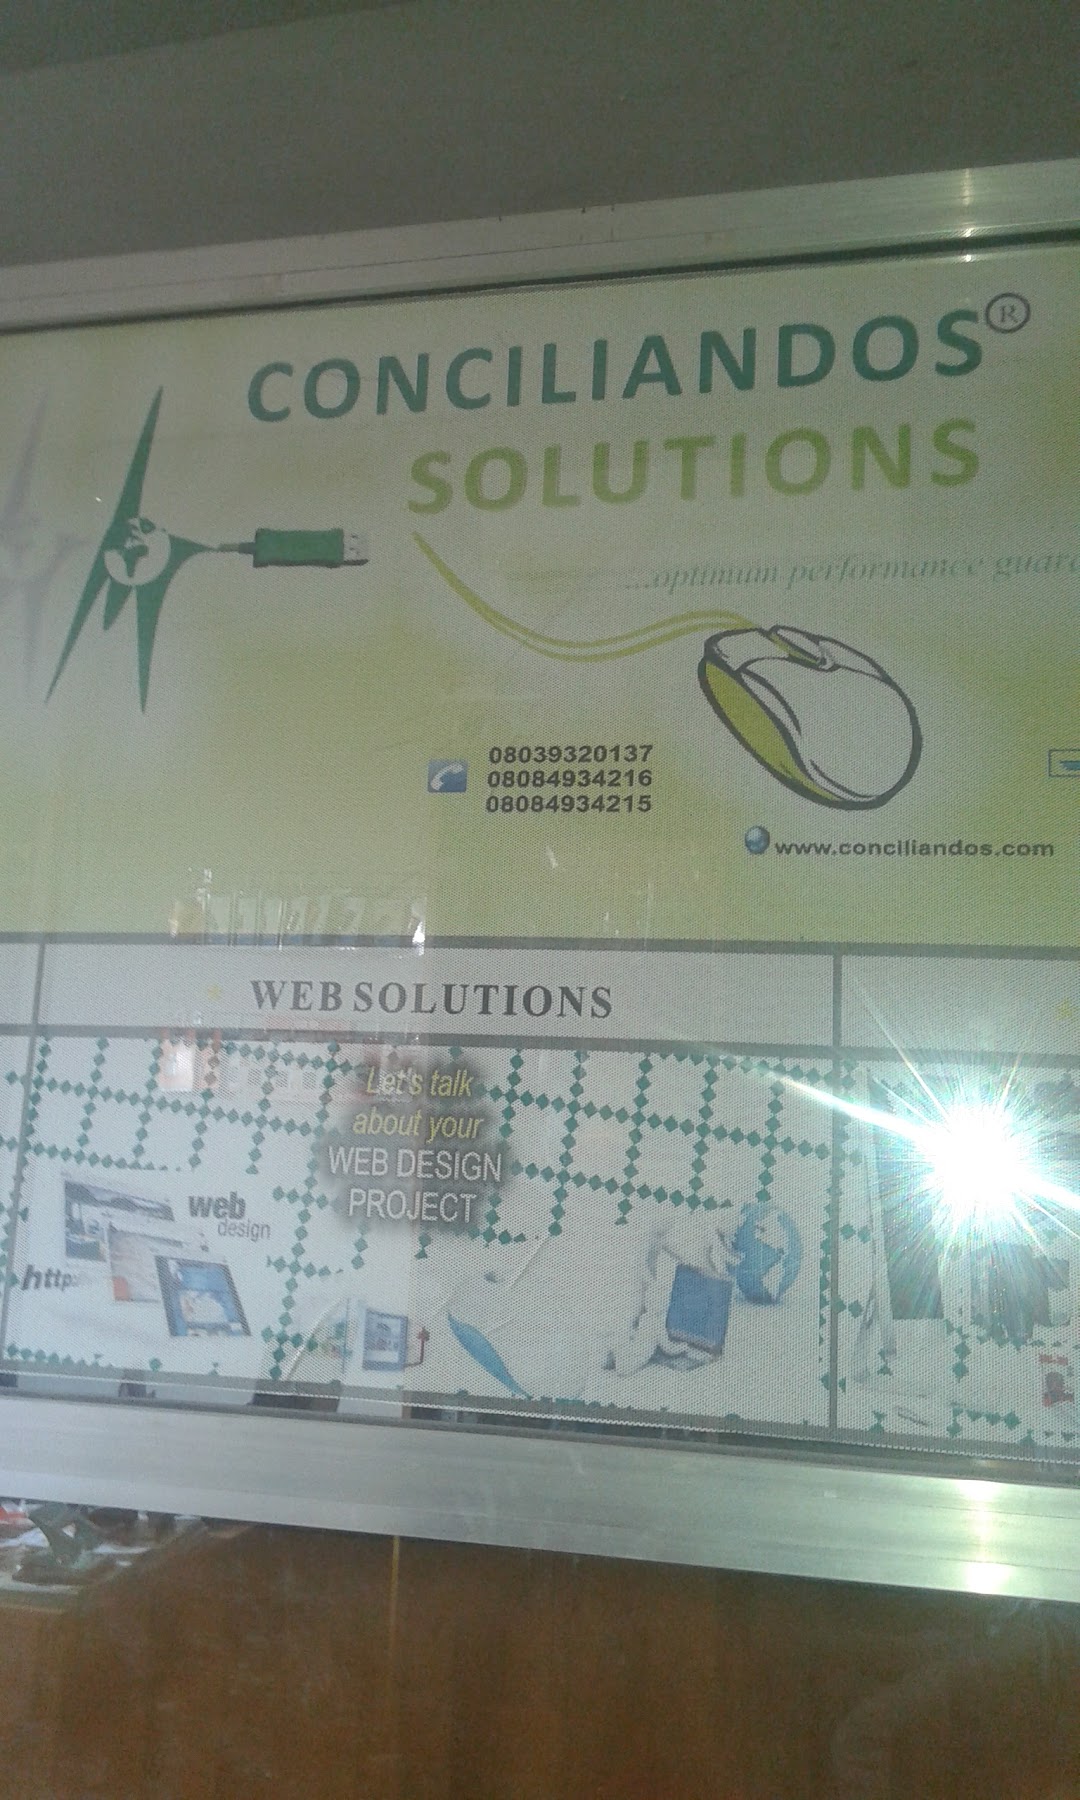 Conciliandos Solutions Limited